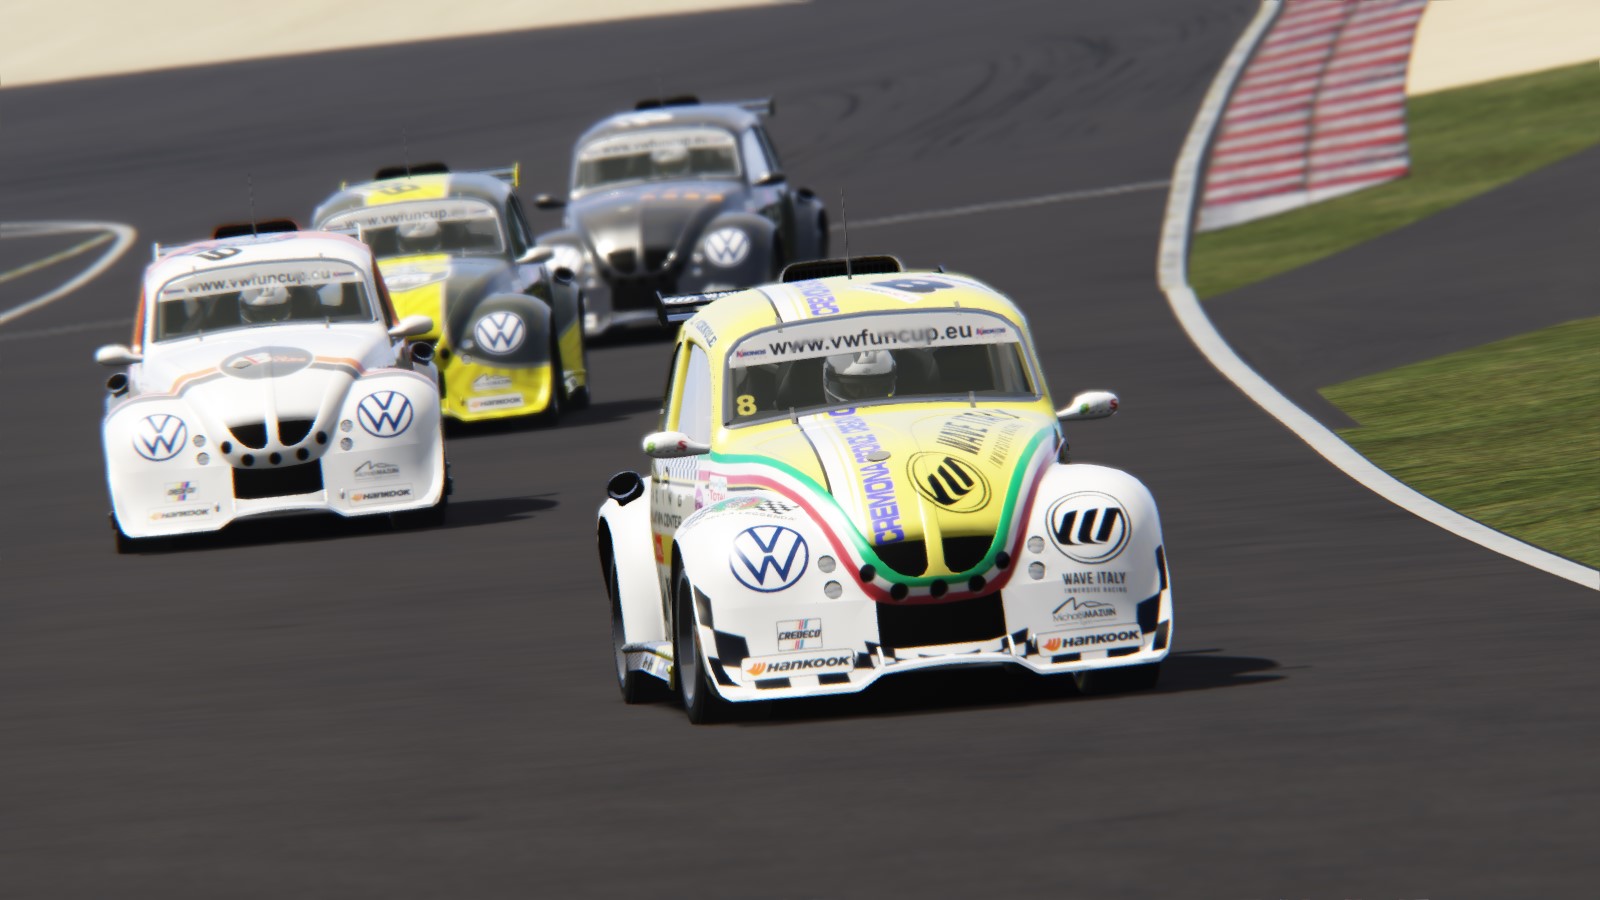 image 1 - Virtuele Fun op het gloednieuwe F1-circuit van Zandvoort!